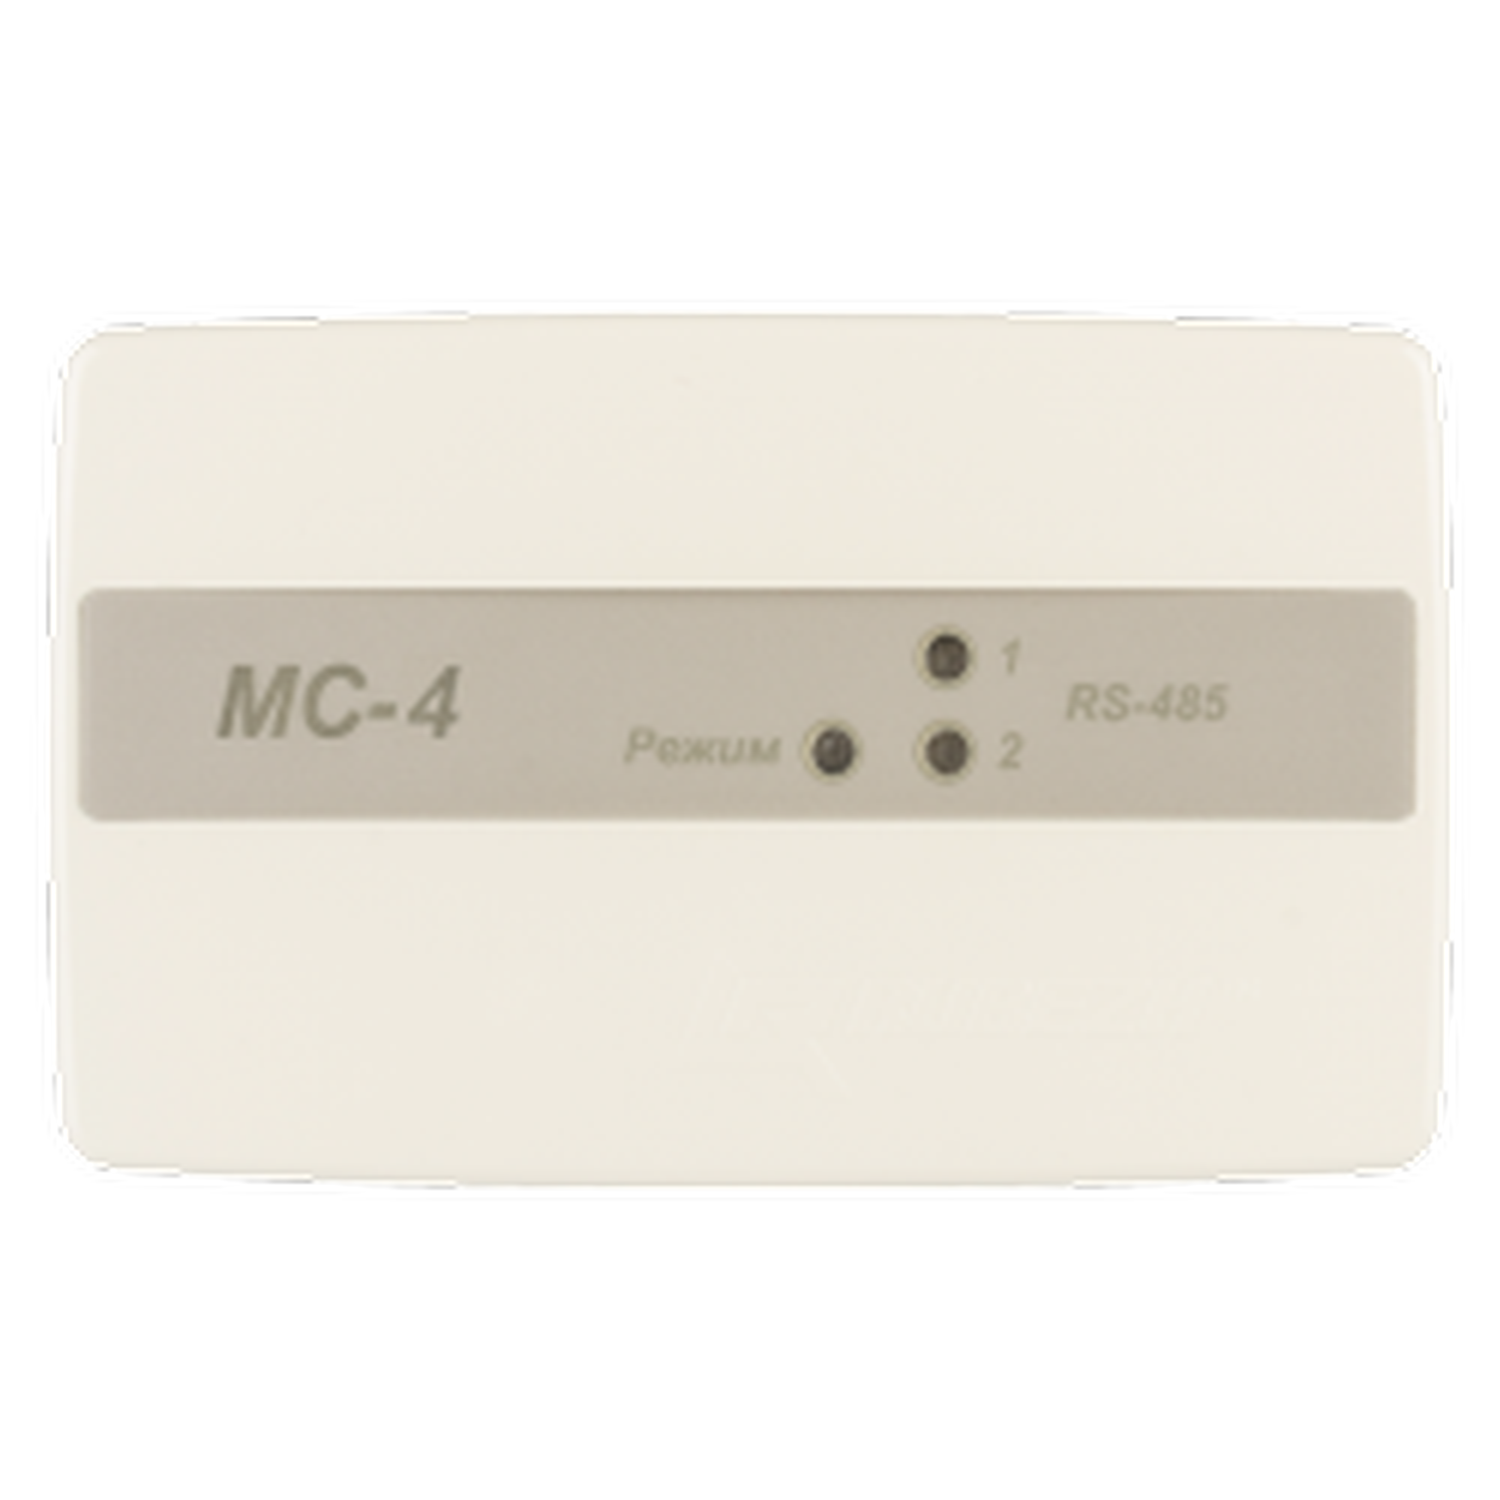 Мс 3 15. Адресный релейный модуль РМ-4 прот r3. Модуль сопряжения для адресных ПКП. МС-1 модуль сопряжения. Модуль сопряжения преобразователь интерфейса r3-MC-E "рубеж".